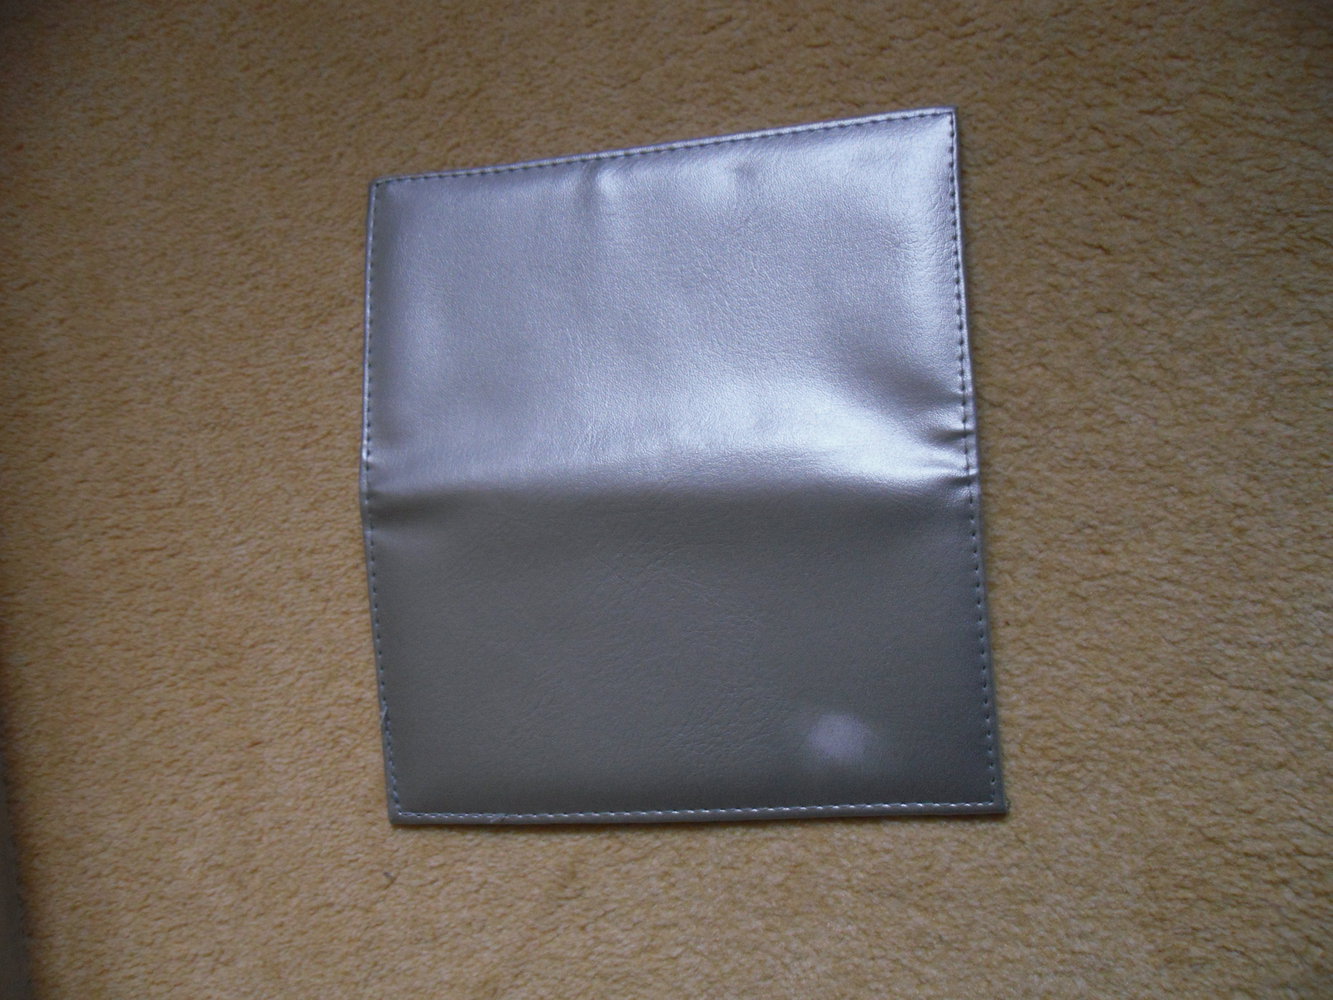 Silberfarbene Brieftasche, unbenutz